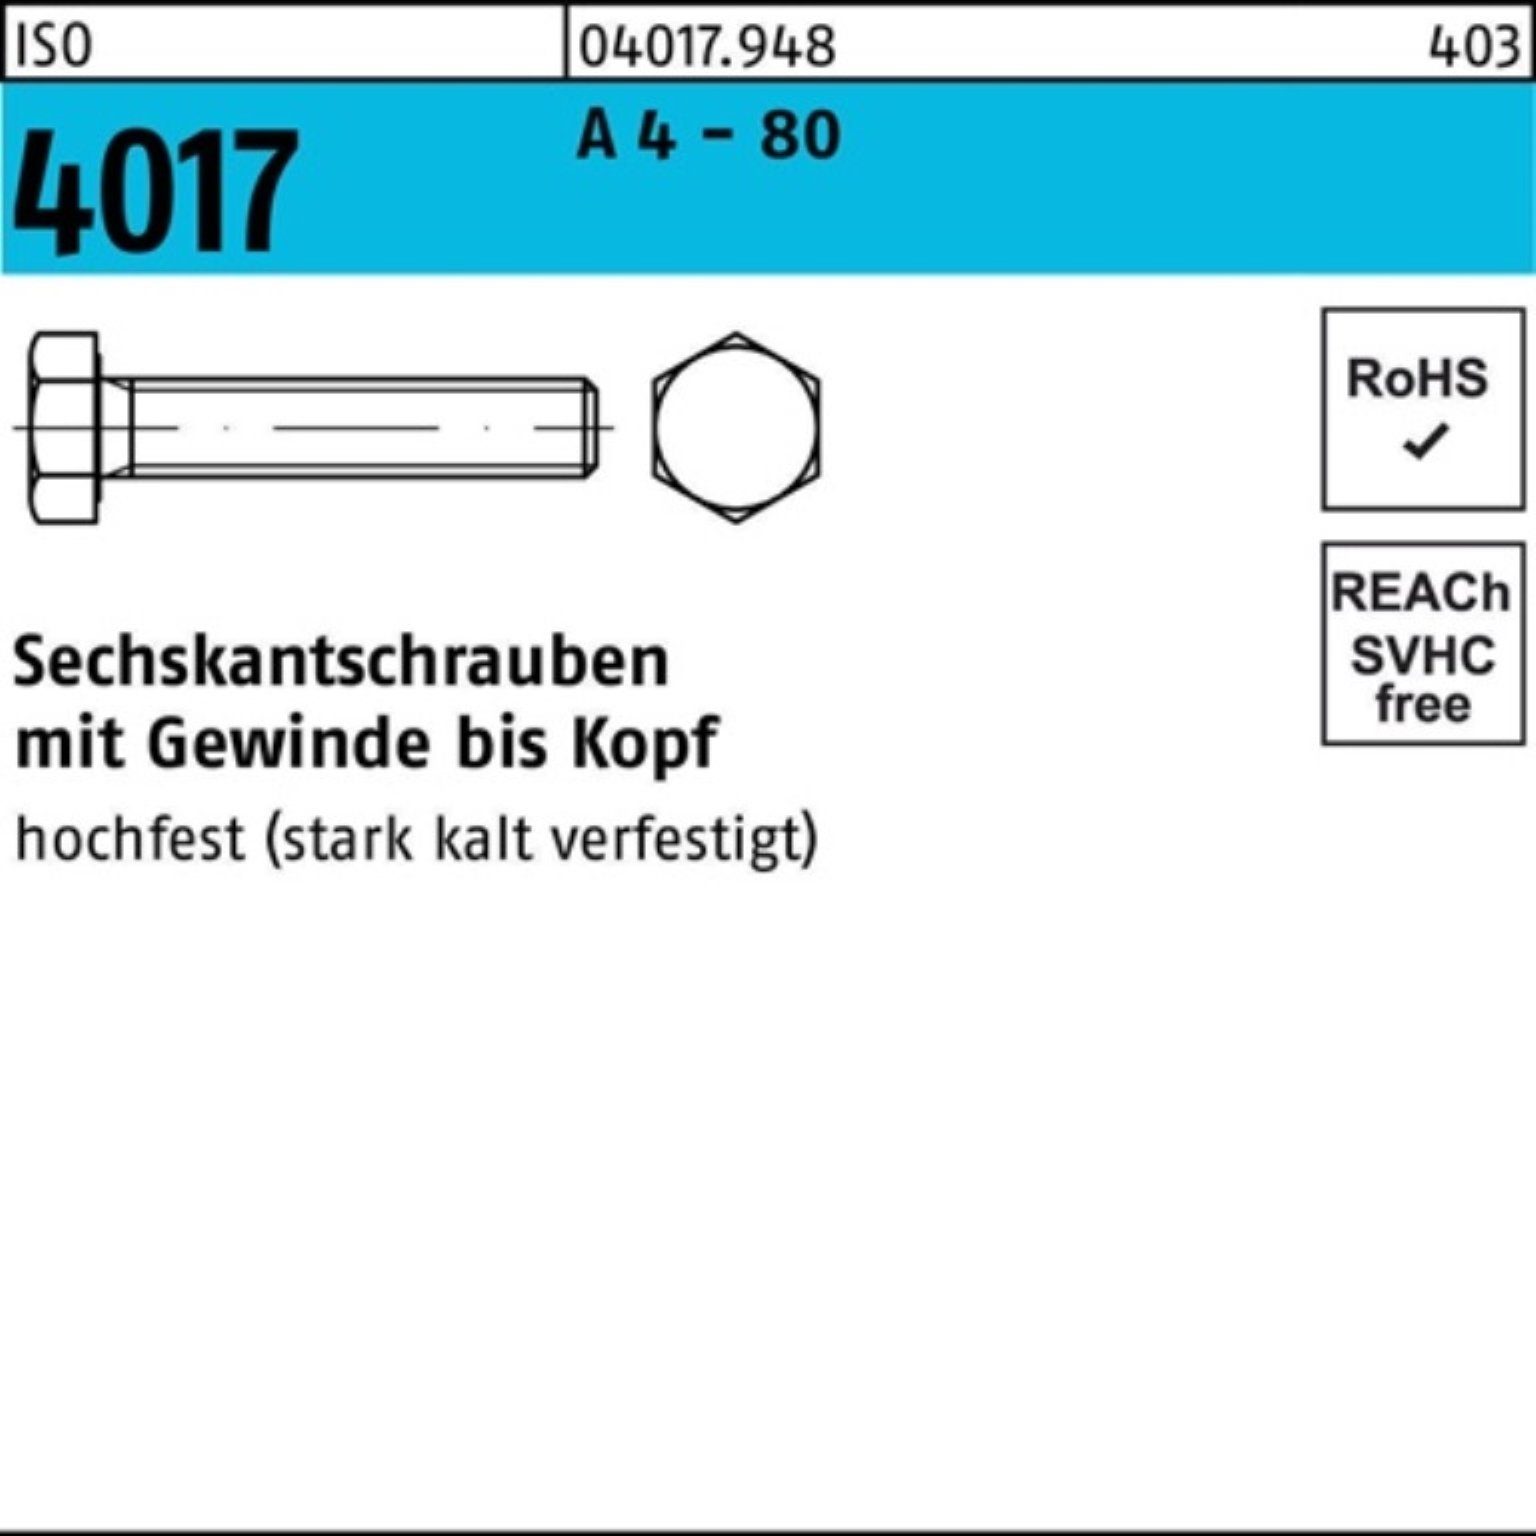 Bufab Sechskantschraube 100er Pack Sechskantschraube ISO 4017 VG M6x 25 A 4 - 80 100 Stück IS